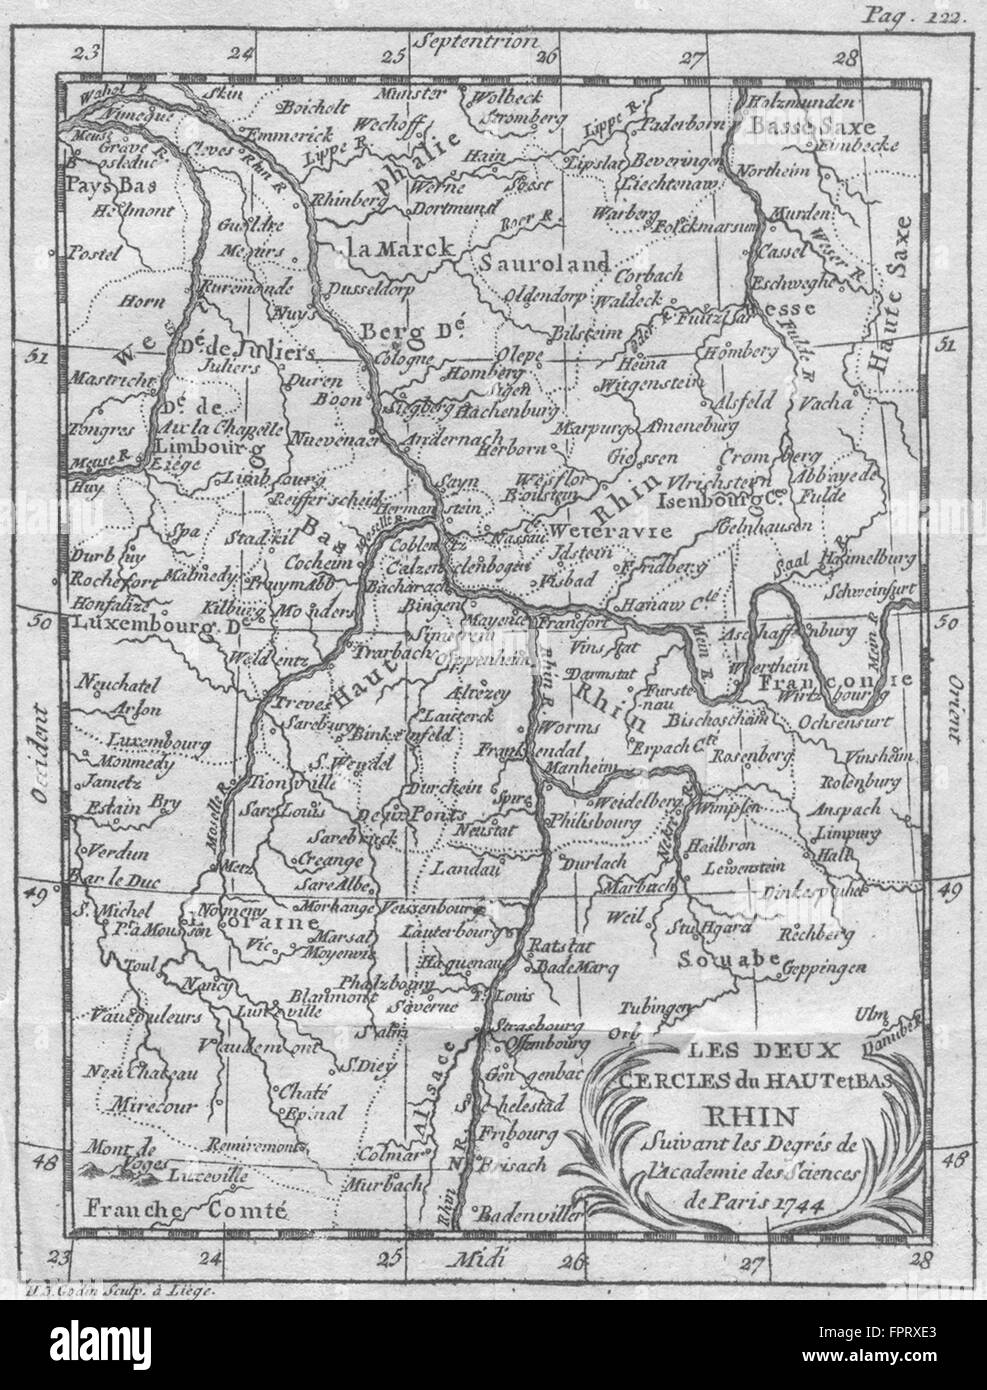 Alemania Francia: Rhin Rhine Rhein: Buffier, 1785 mapa antiguo Foto de stock